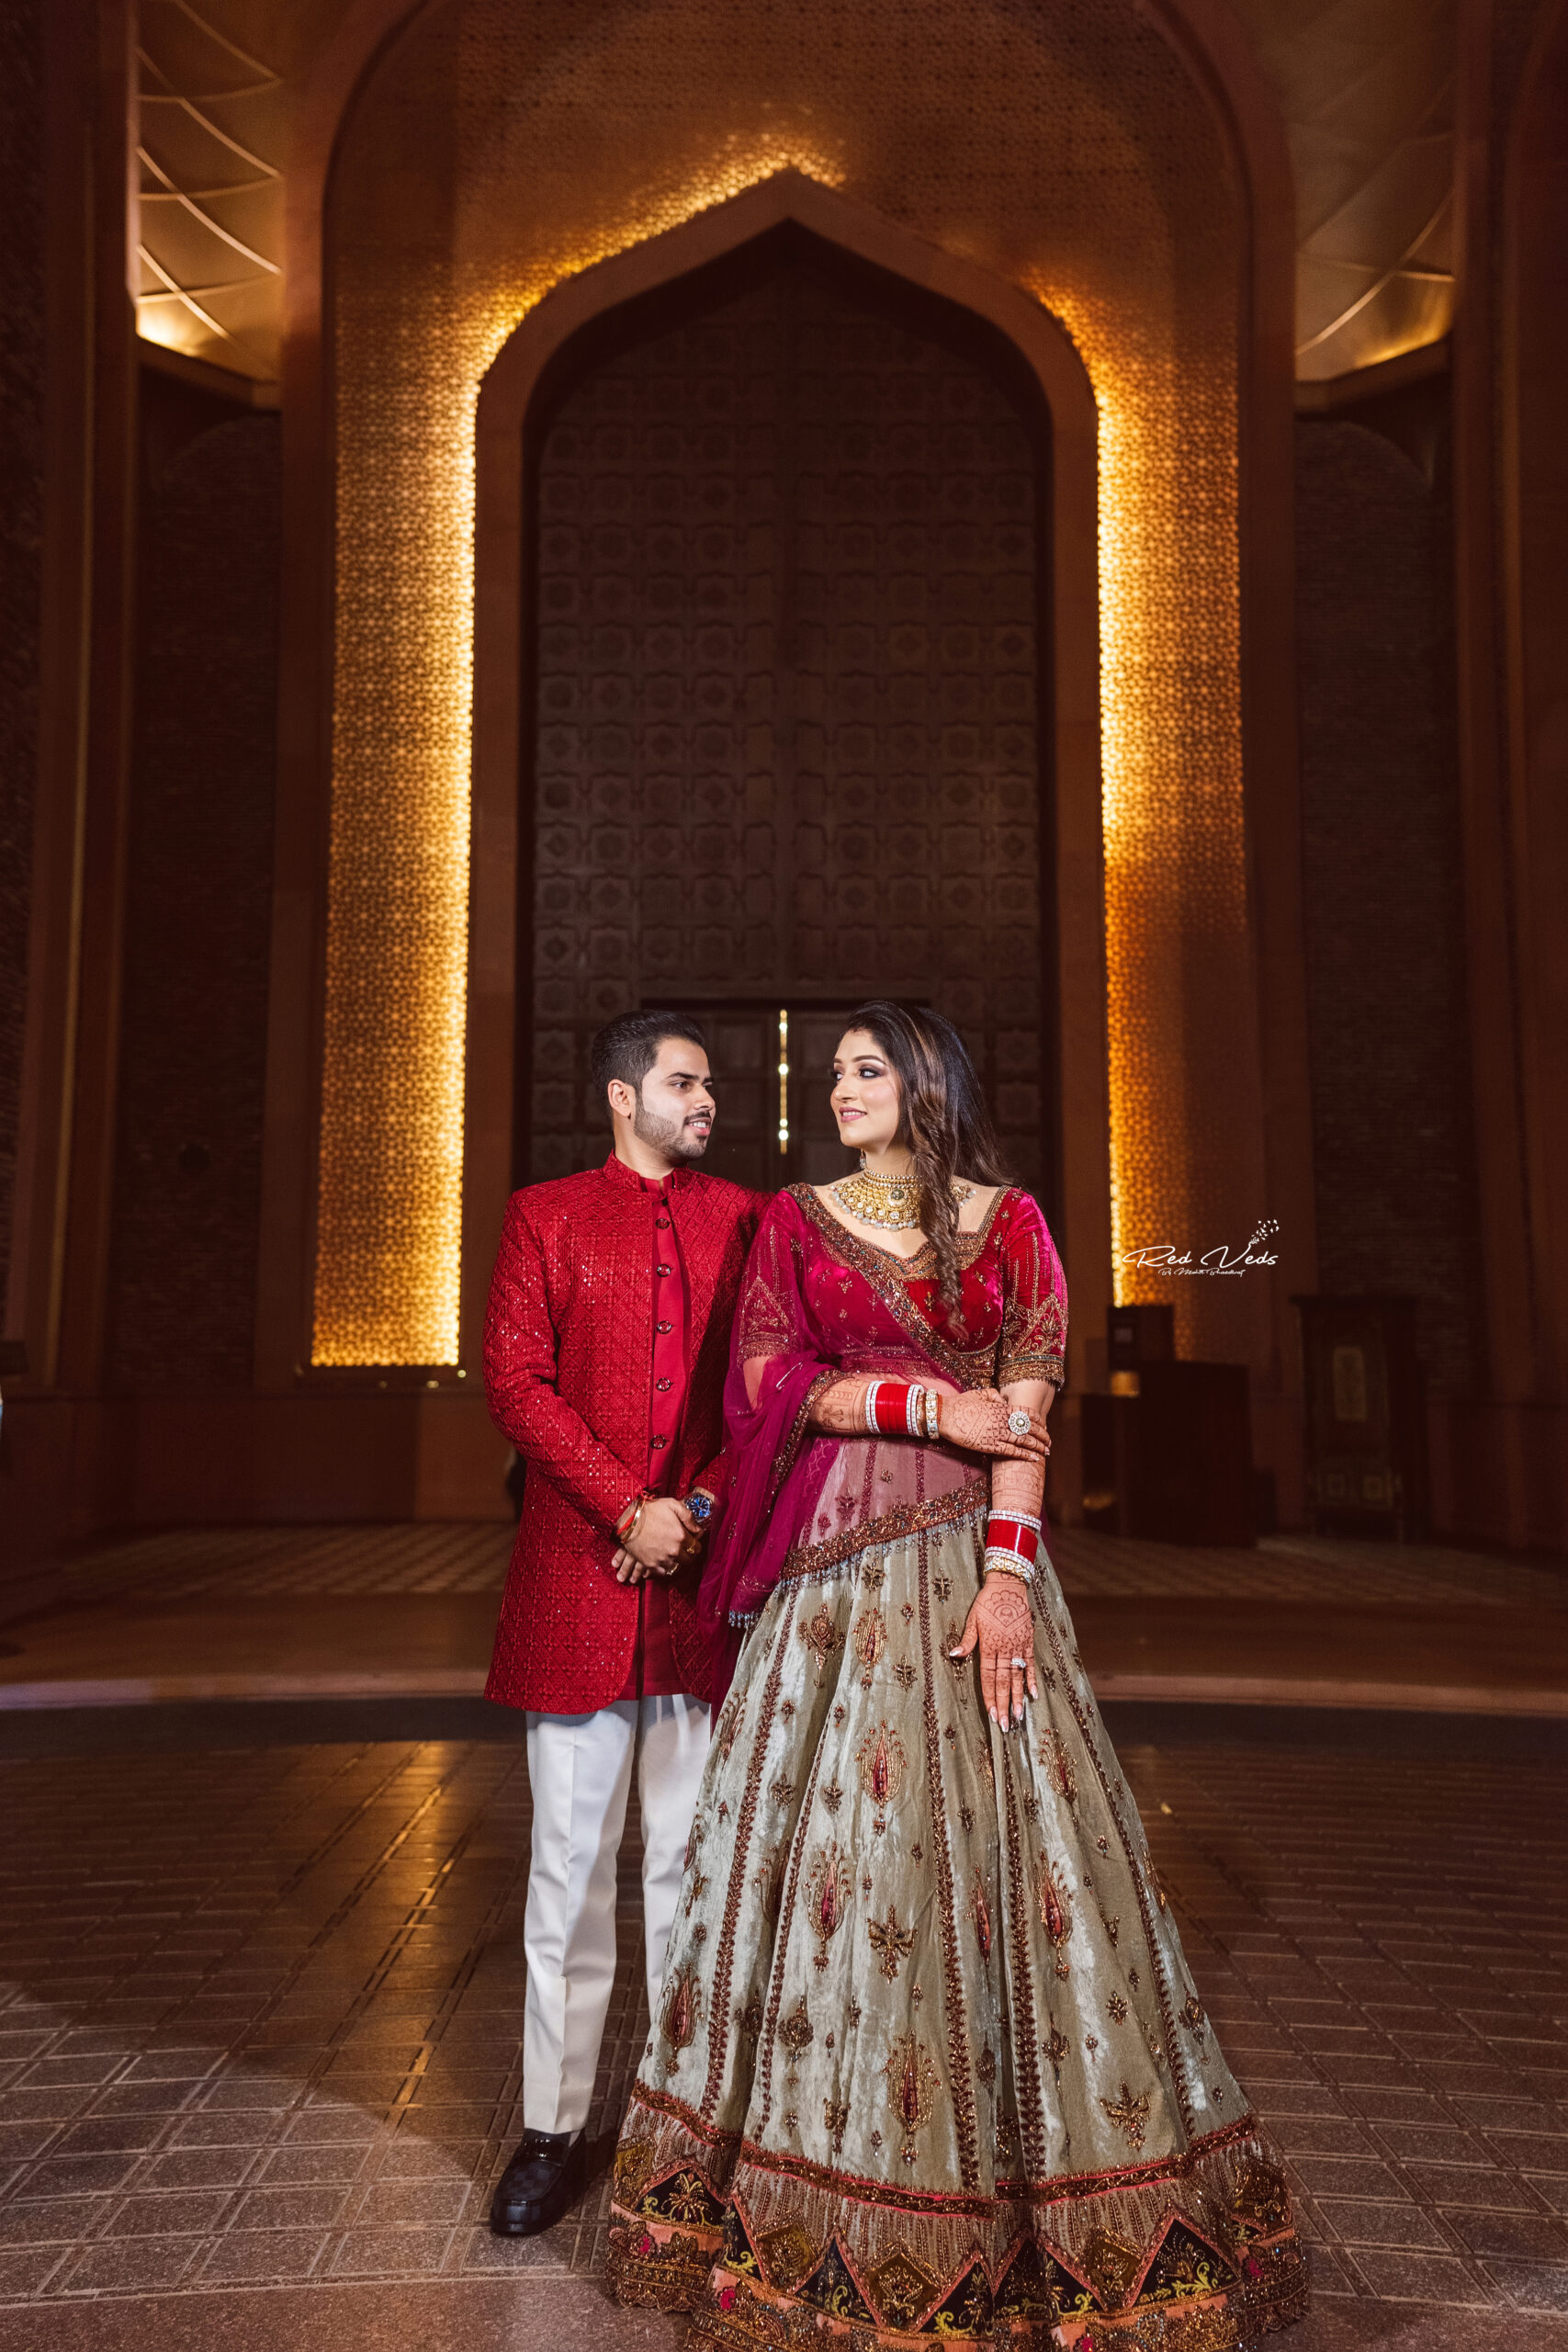 Breathtaking indian newlyweds photo session | Indian bride photography poses,  Indian wedding poses, Indian wedding photography couples